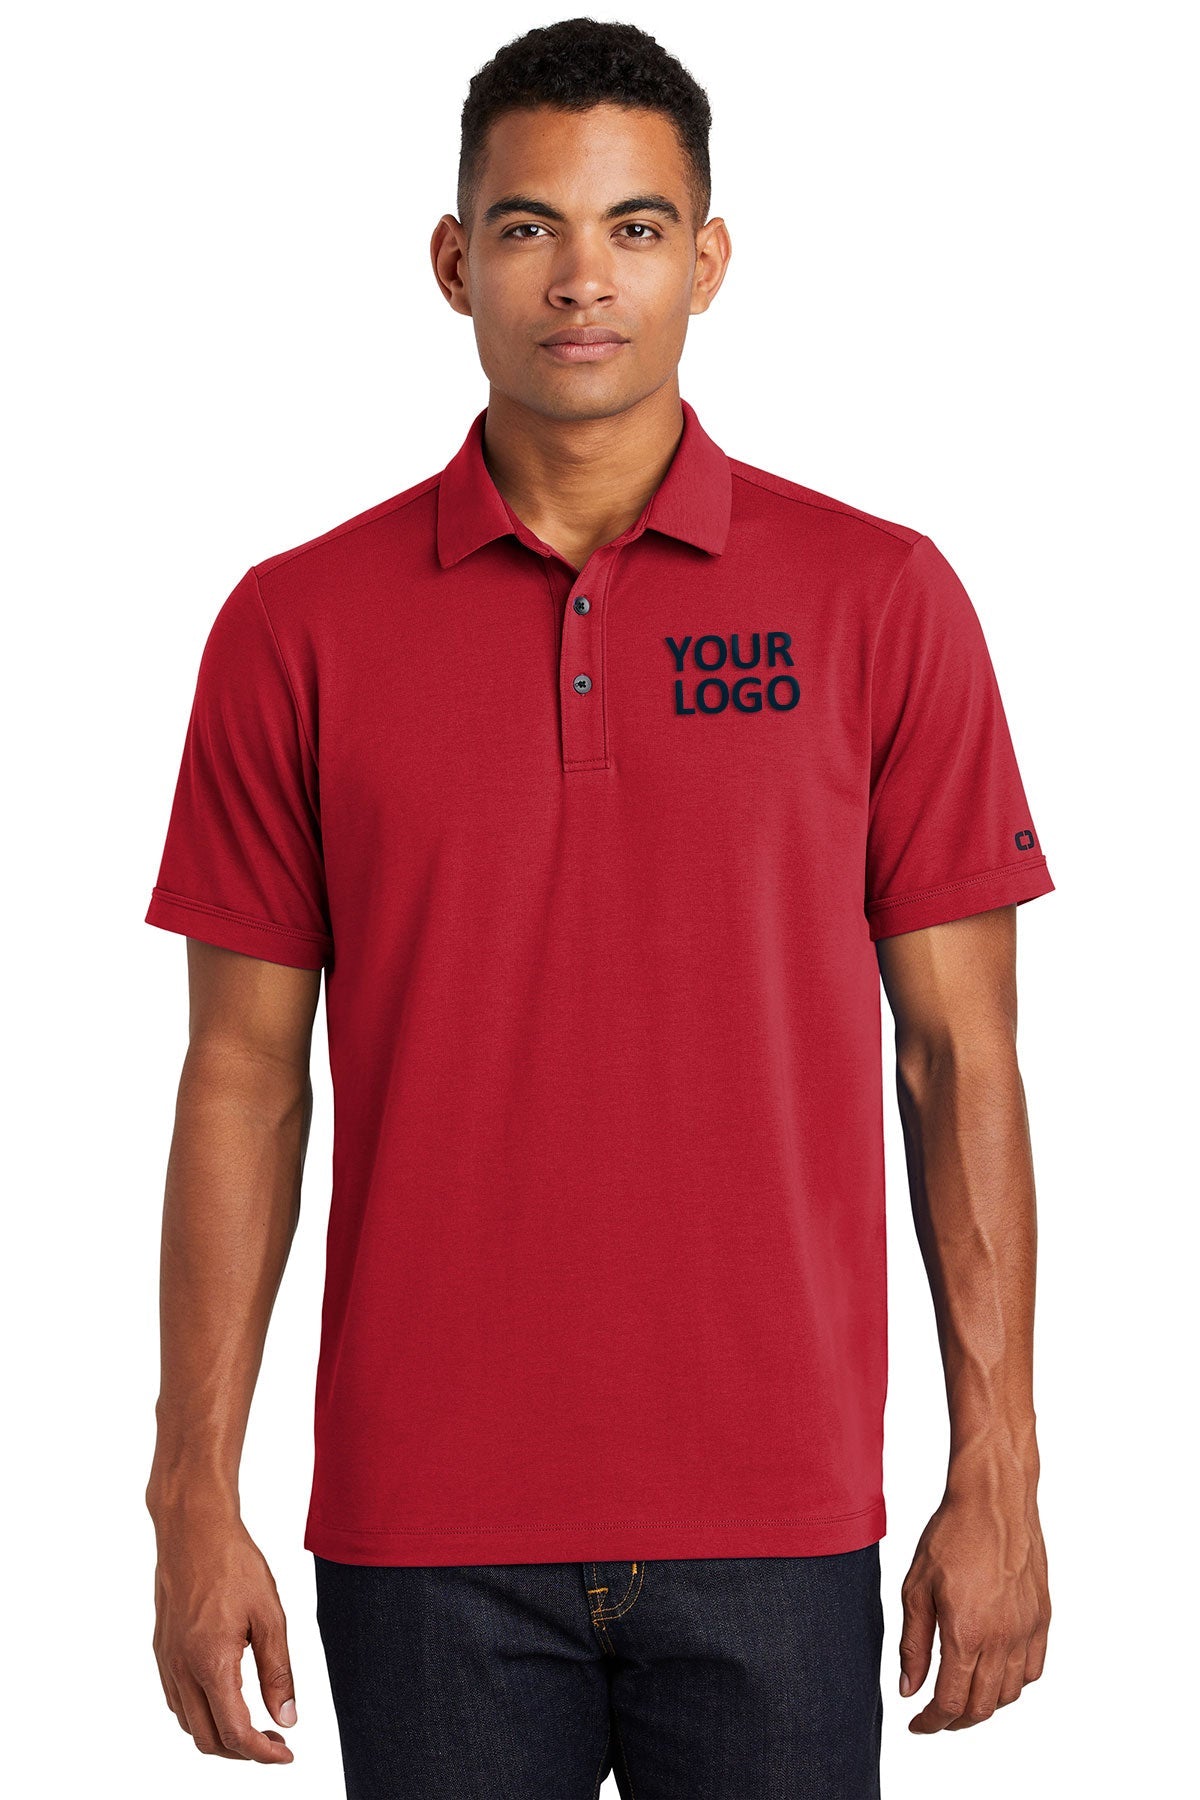 OGIO Signal Red OG138 embroidered polo shirts custom